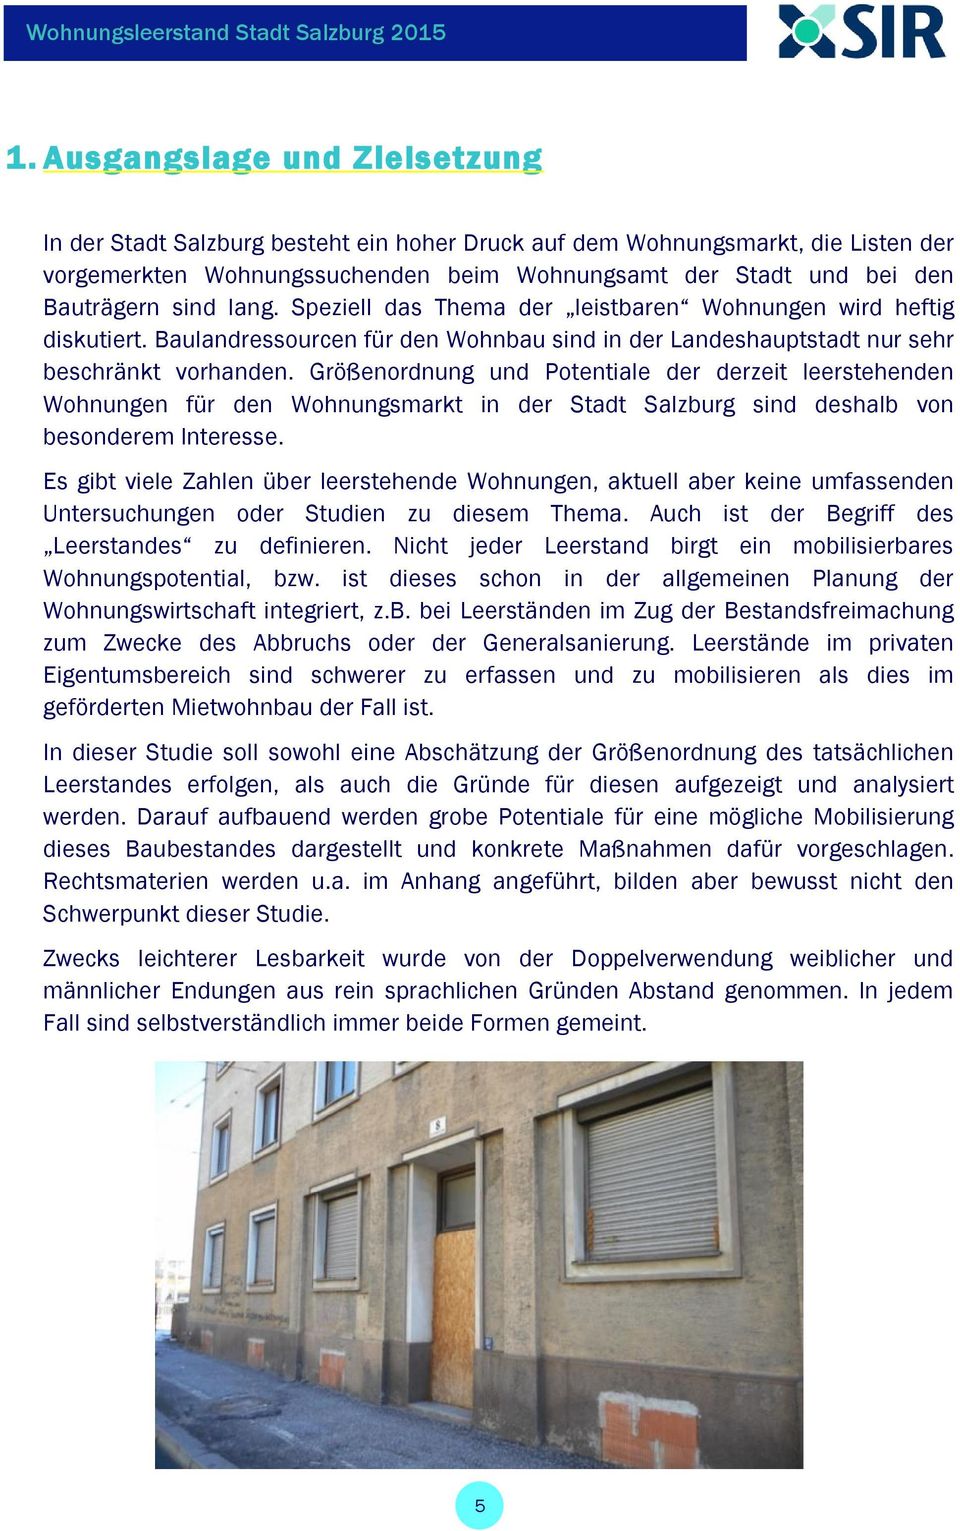 Größenordnung und Potentiale der derzeit leerstehenden Wohnungen für den Wohnungsmarkt in der Stadt Salzburg sind deshalb von besonderem Interesse.